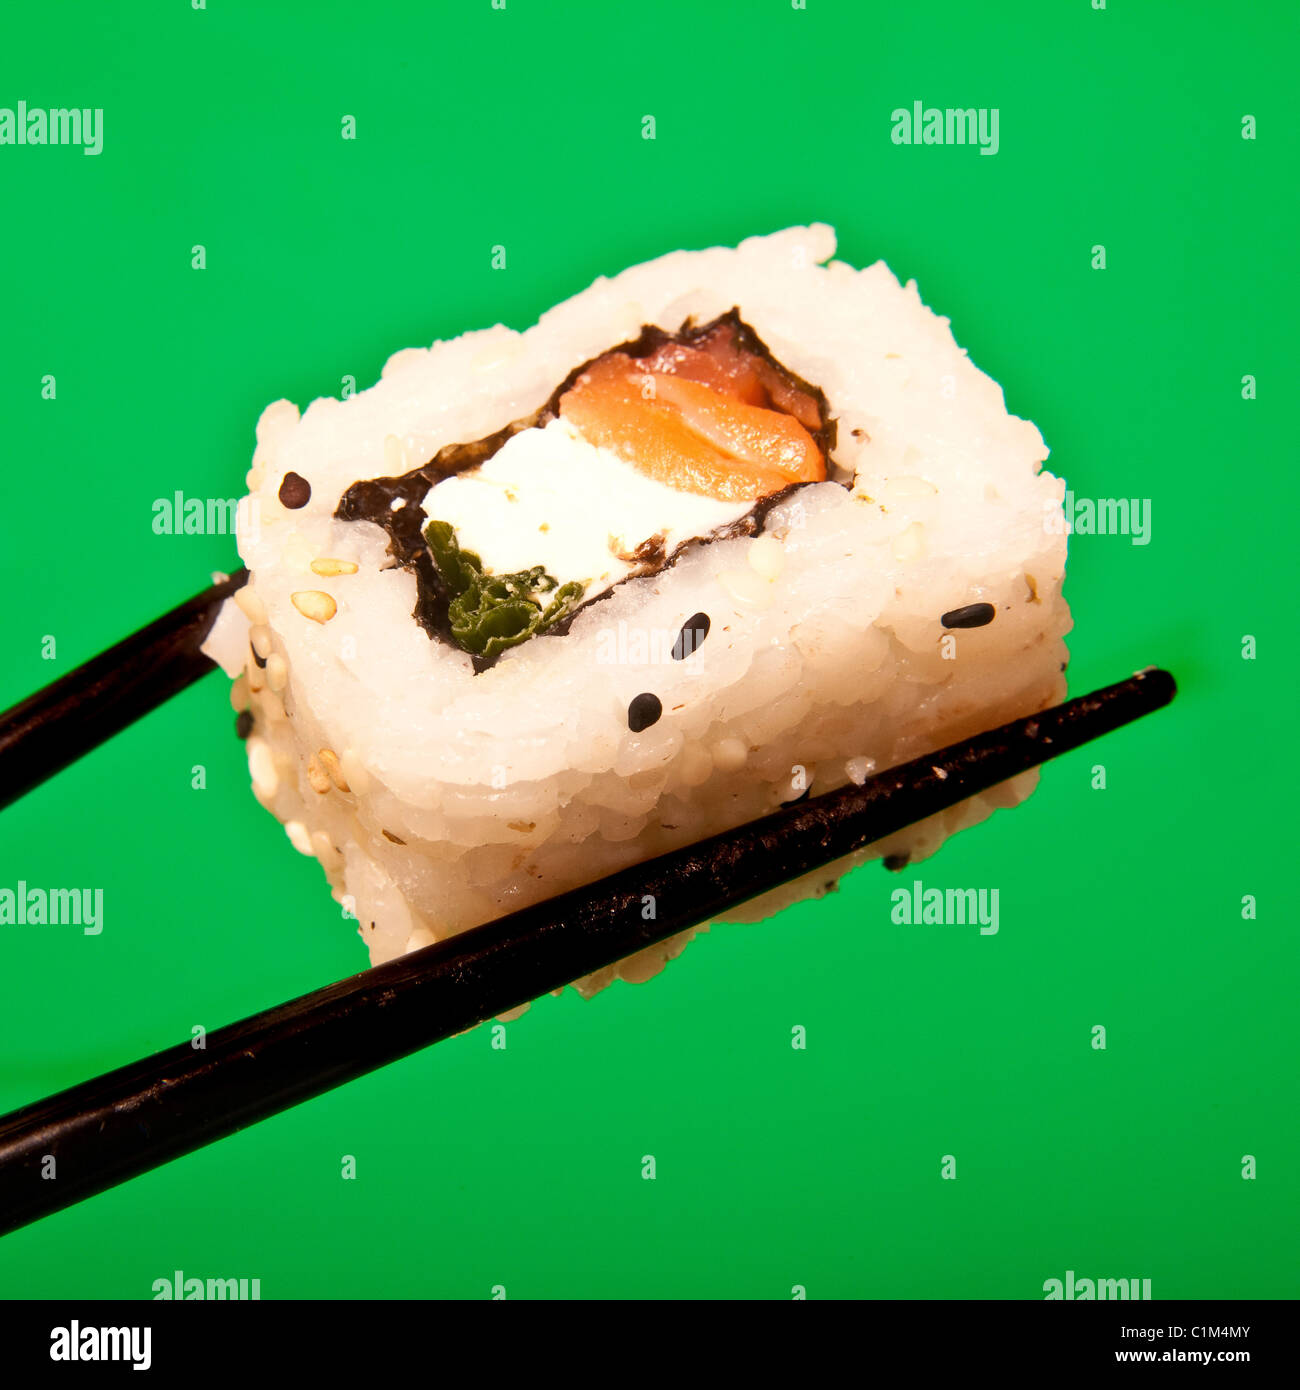 Saumon fumé et fromage à la crème Californian roll sushi. Banque D'Images